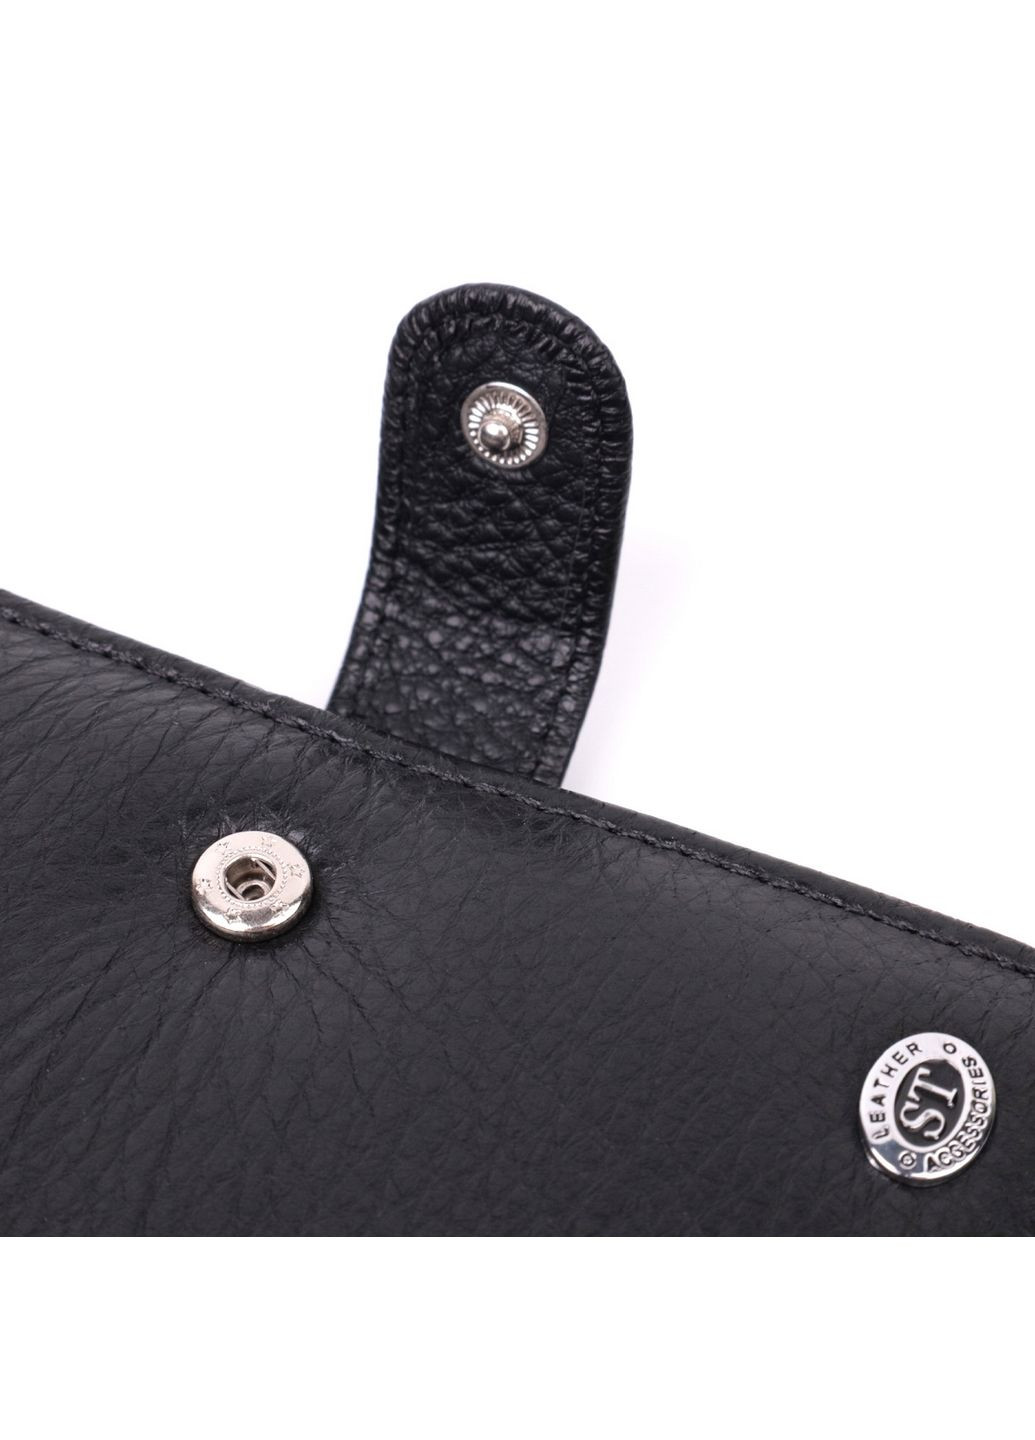 Кожаный мужской бумажник st leather (288184680)